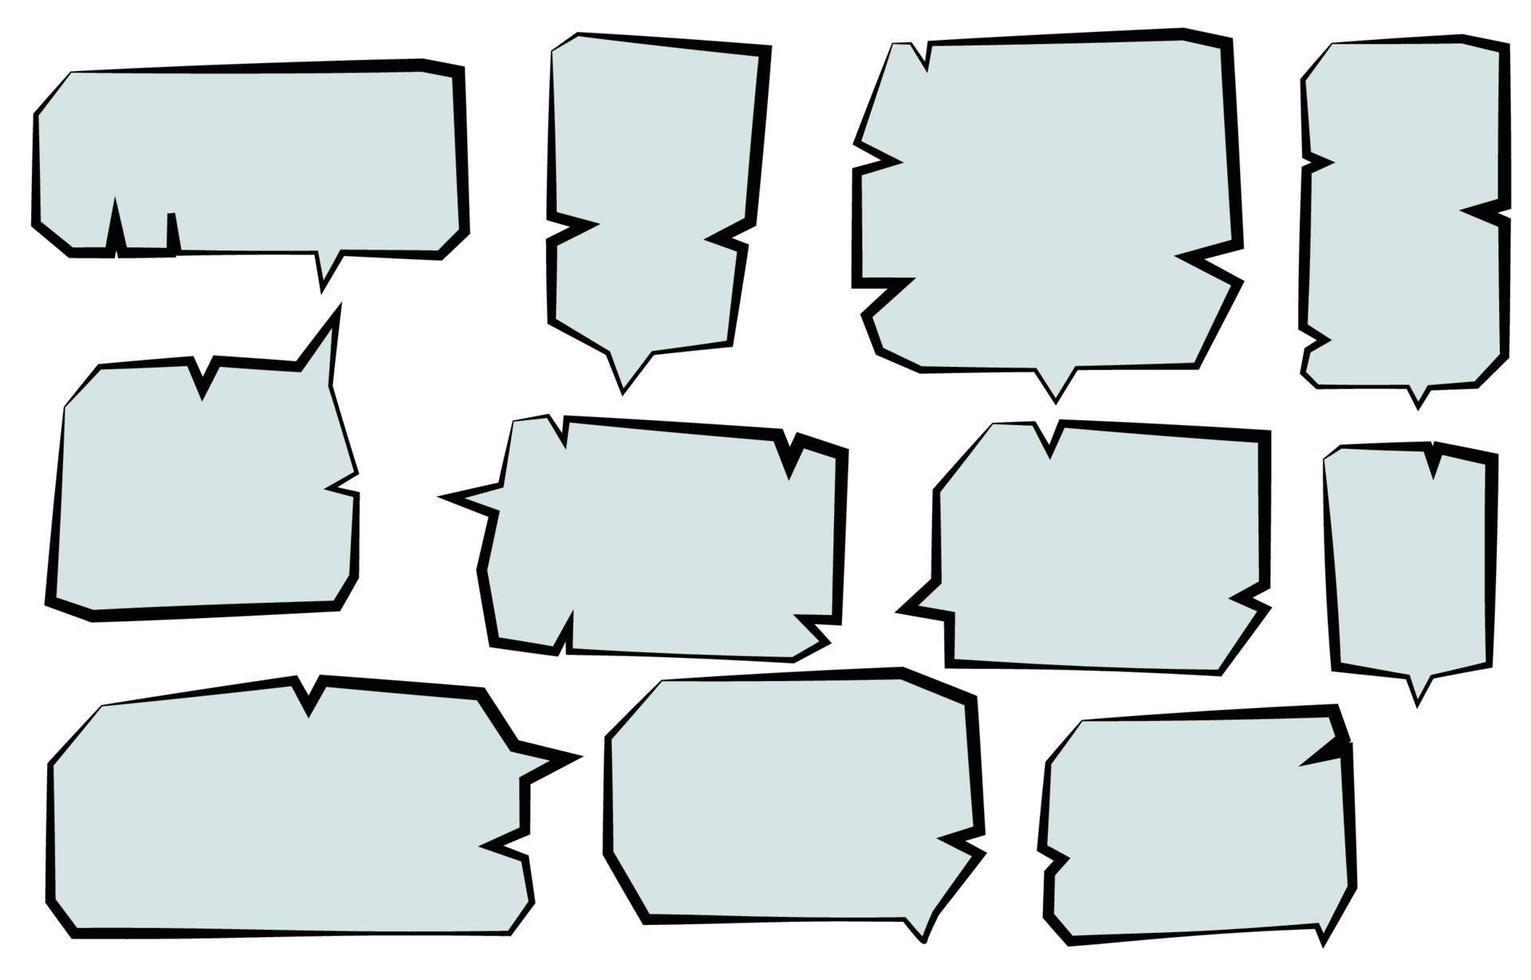 Legen Sie Sprechblasen auf weißem Hintergrund fest. Chat-Box oder Chat-Vektorquadrat und Doodle-Nachricht oder Kommunikationssymbolwolke, die für Comics und minimalen Nachrichtendialog spricht vektor